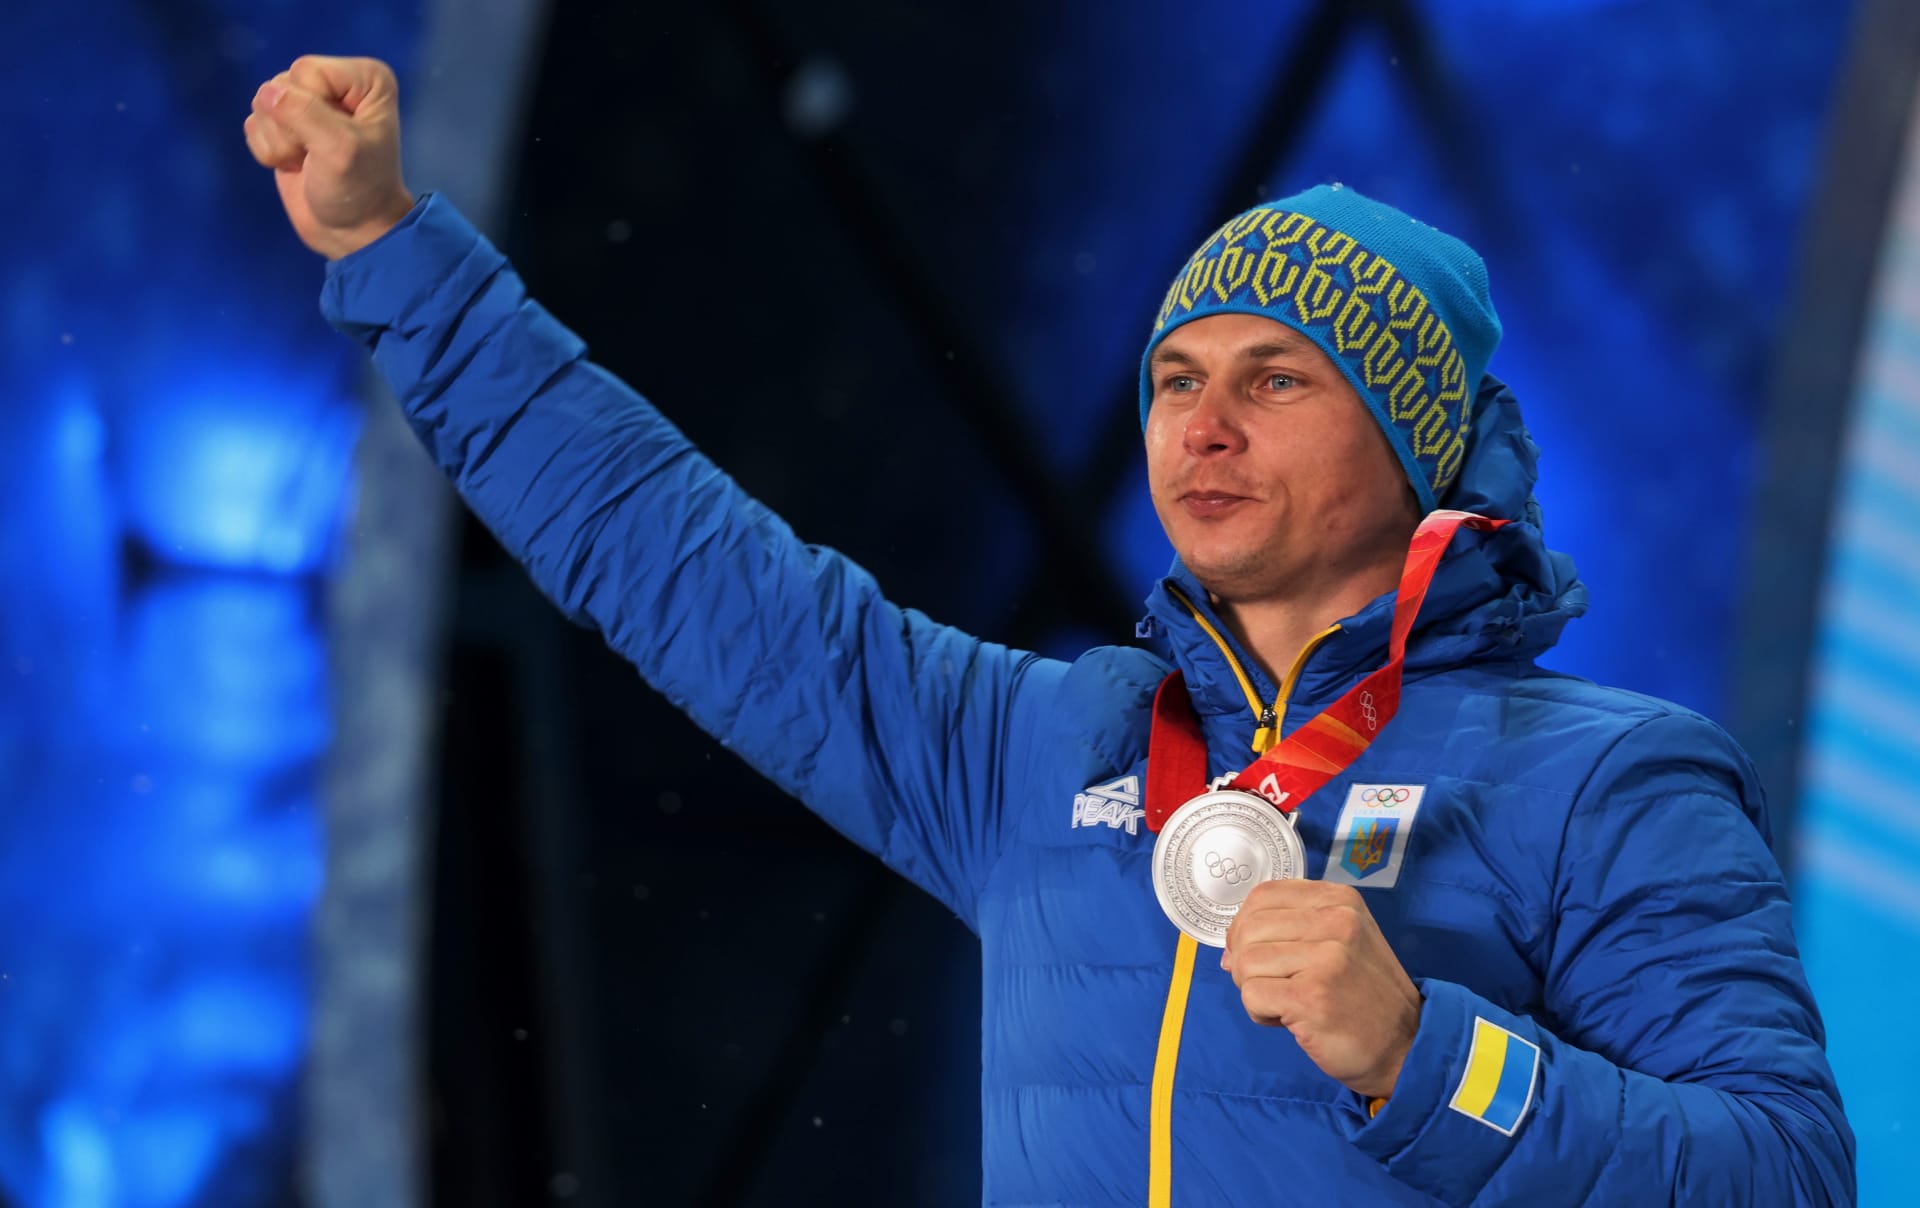 Oleksandr Abramenko slavil na olympiádě v Pekingu velký úspěch, ale nedlouho poté prožívá nejhorší dny života.